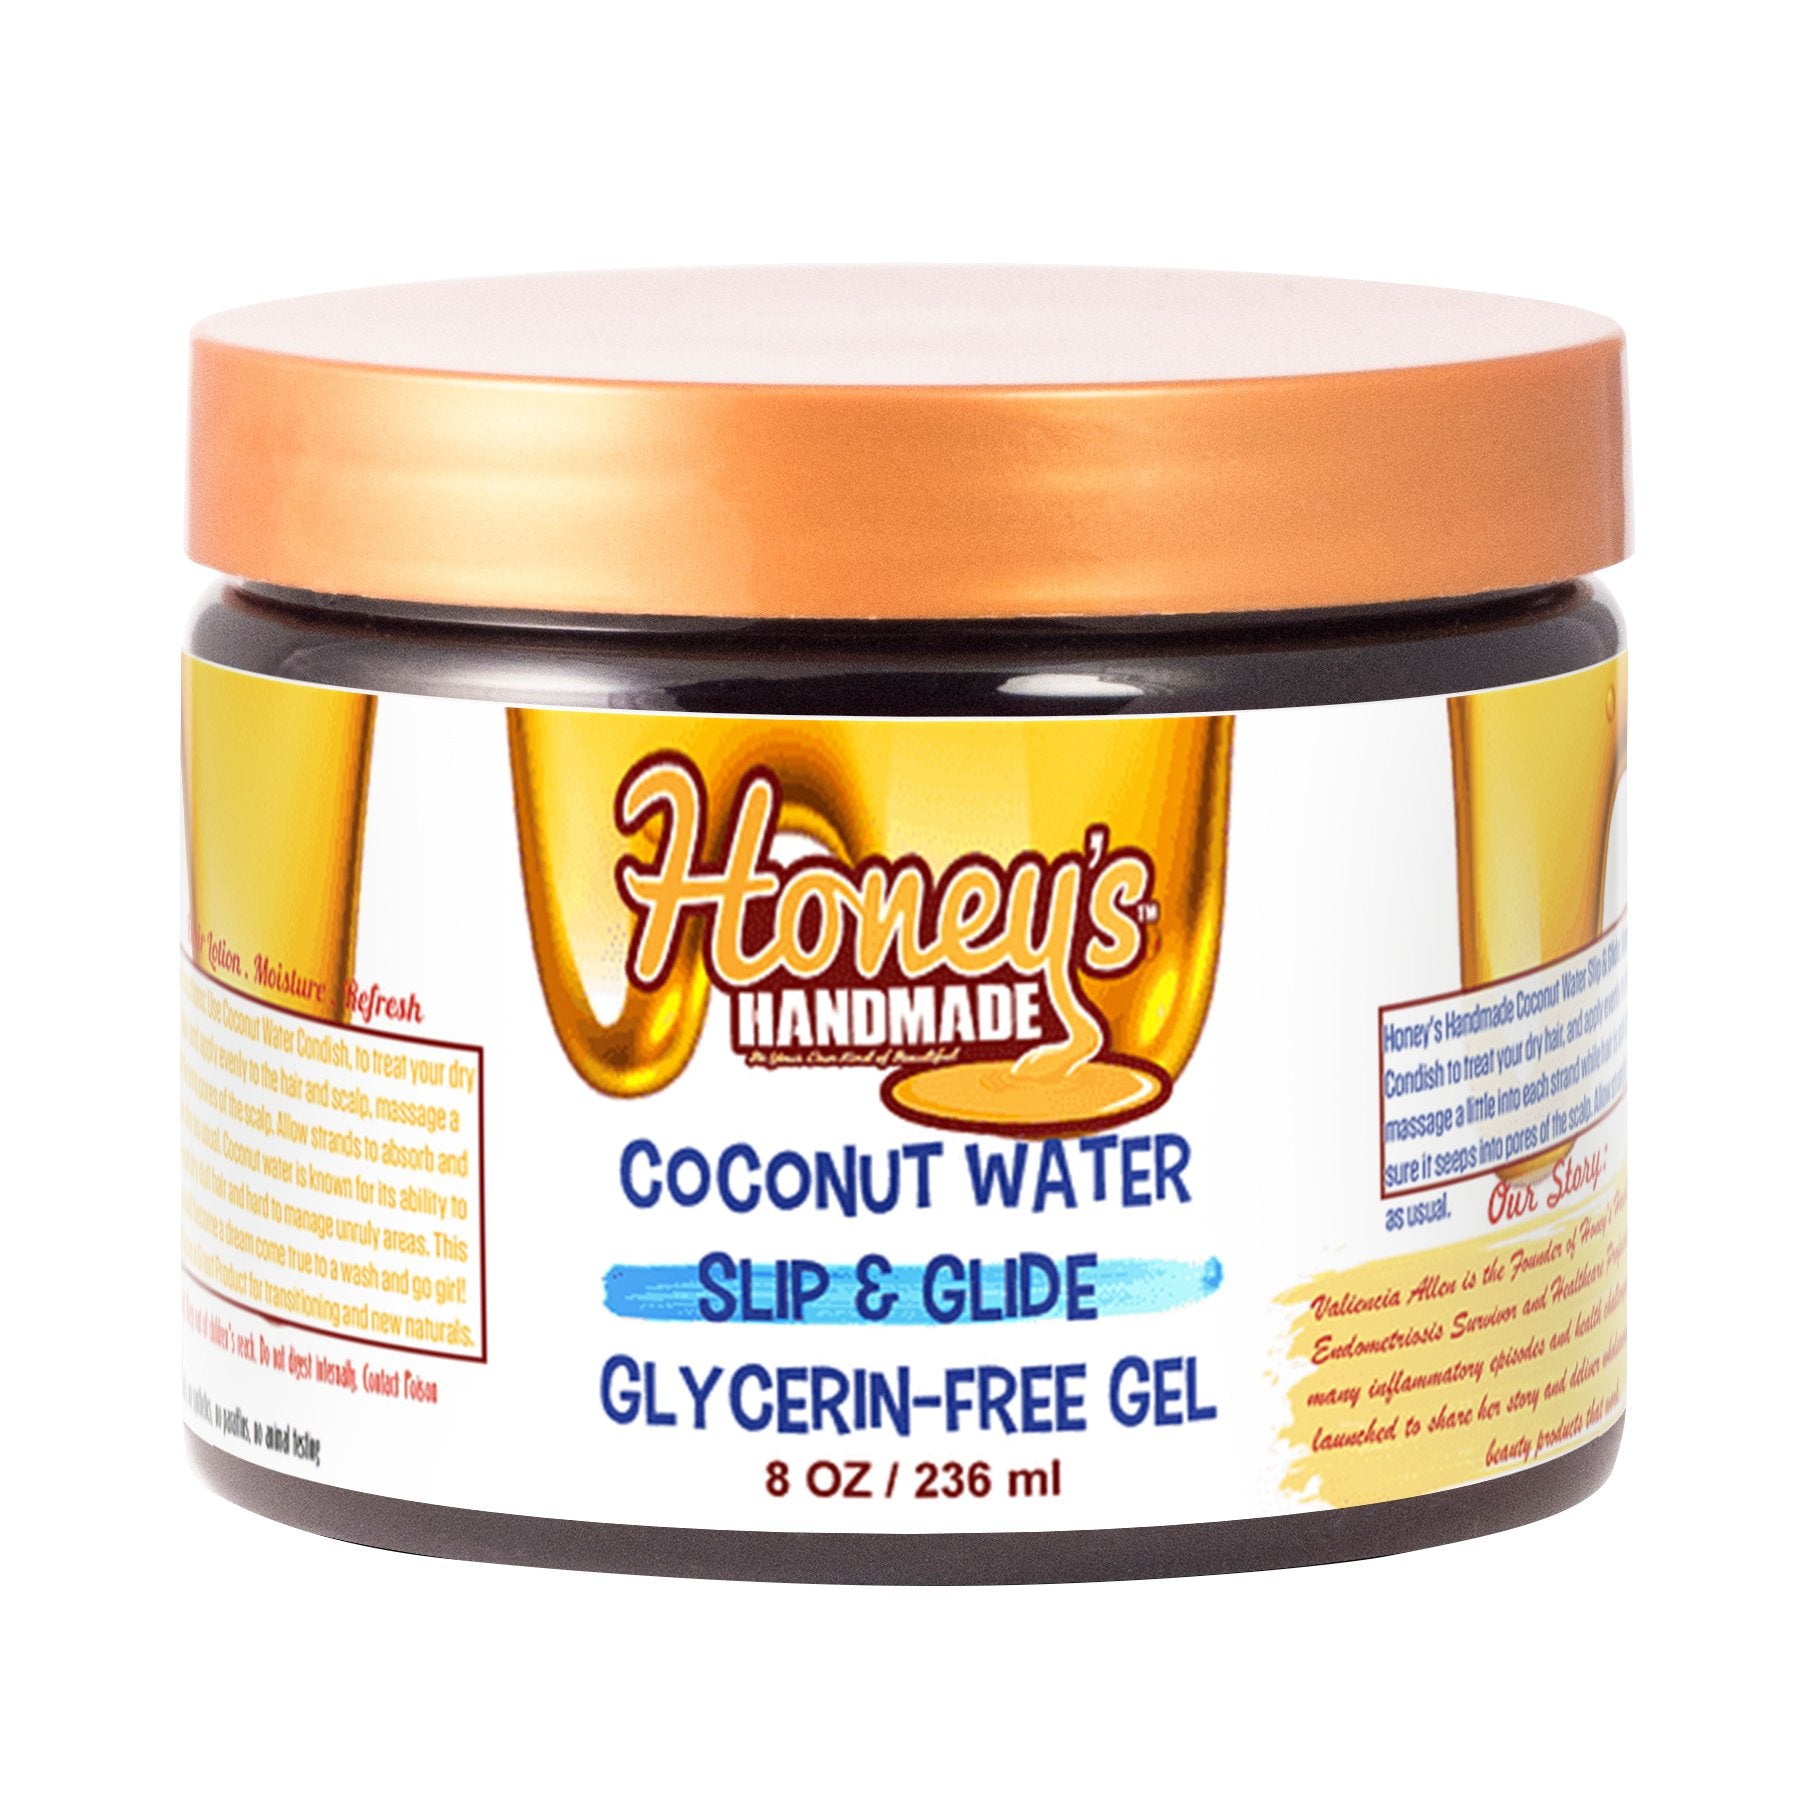 Coconut Water Slip & Glide Glycerin-Free Gel 12.00% Off Auto renew